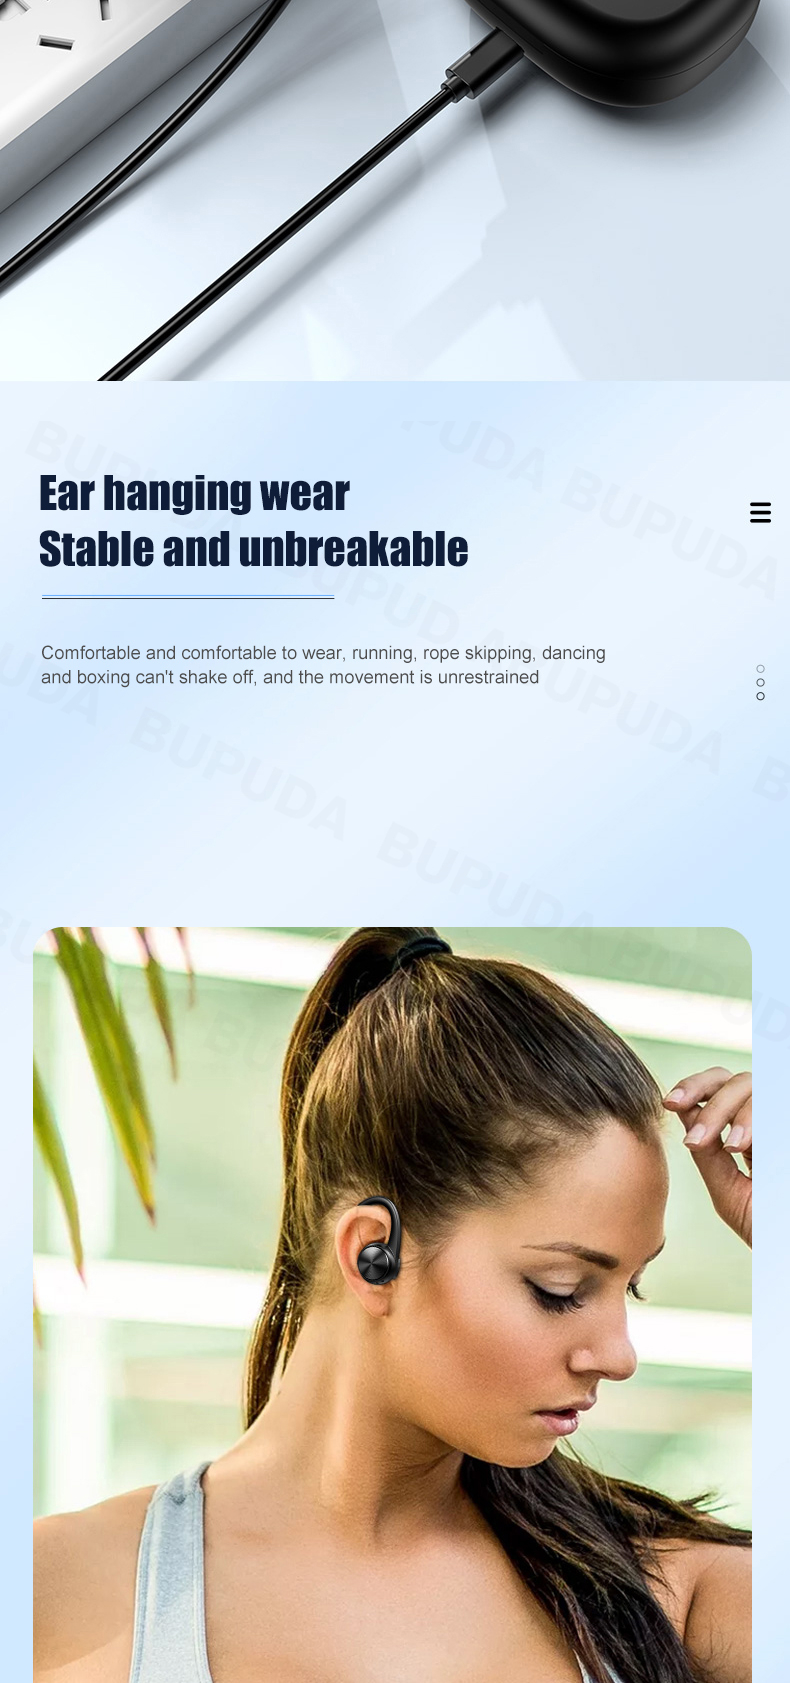 R200-TWS-Earbuds-bluetooth-Wireless-Headphones-with-Mic-IPX5-Waterproof-Ear-Hooks-bluetooth-Earphone-1975078-7